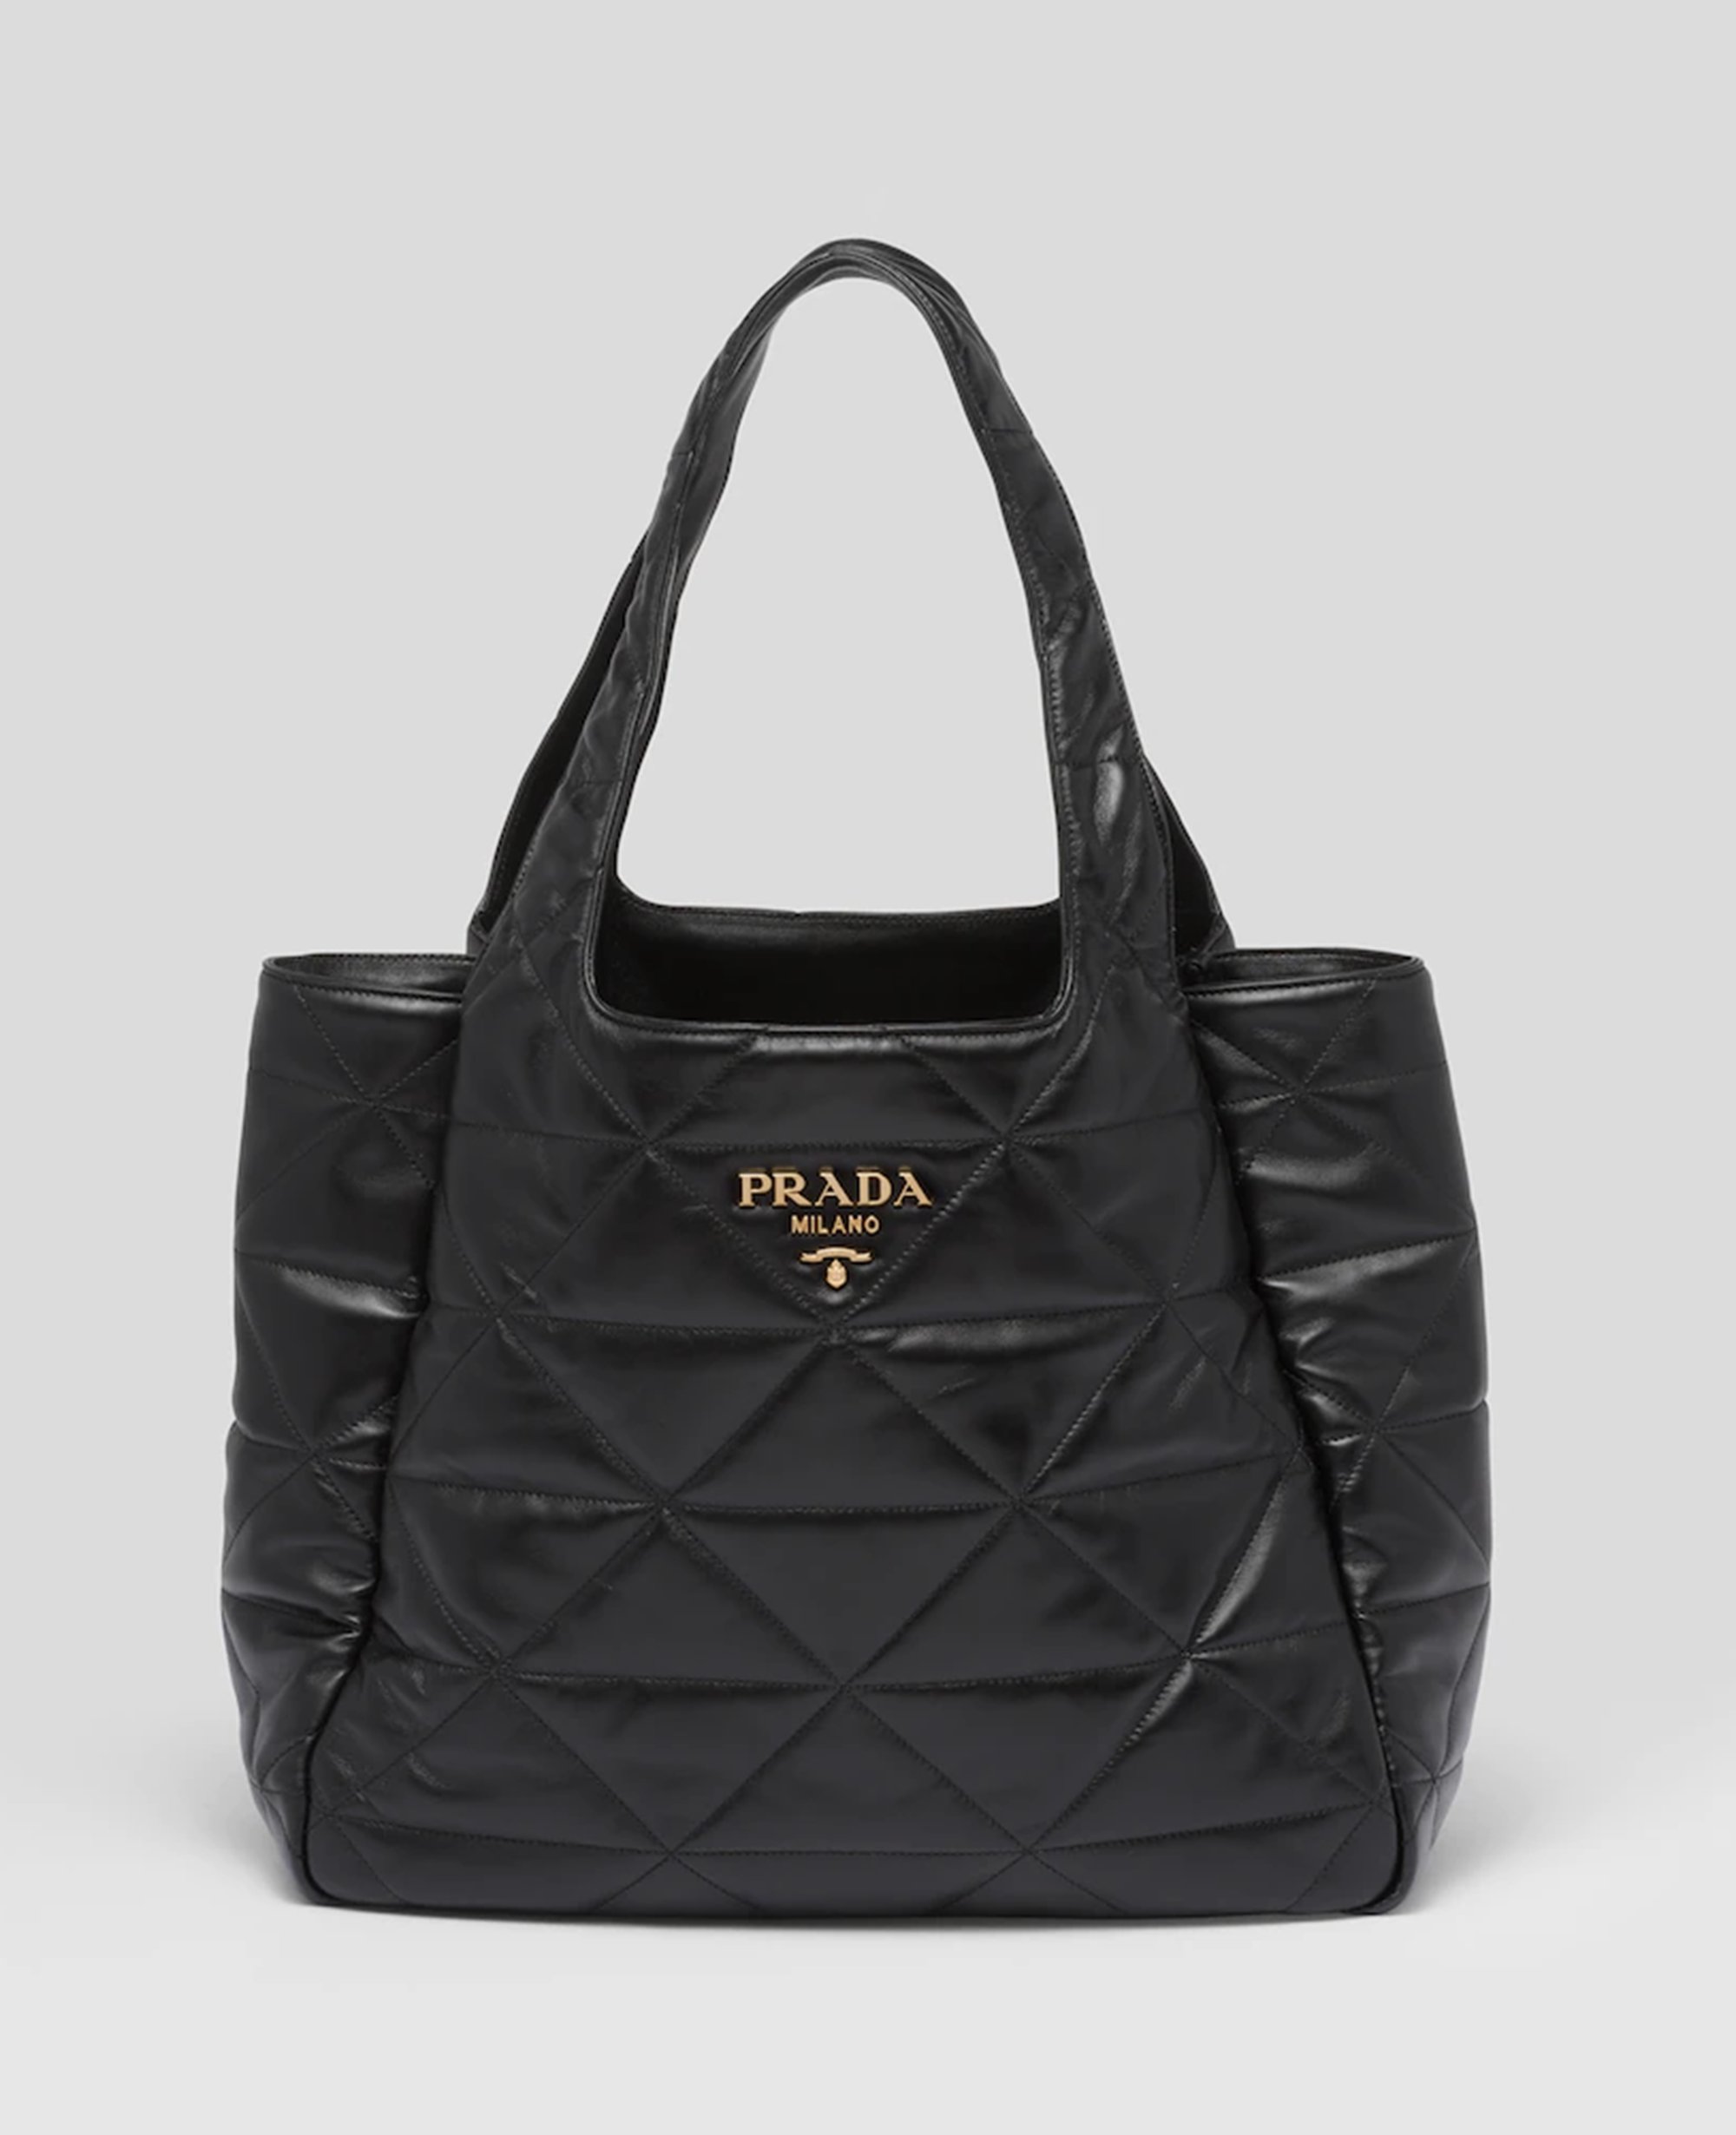 Prada Black Saffiano Leather Coin Purse | Designer Brand | Authentic Prada  | The Bag Hub